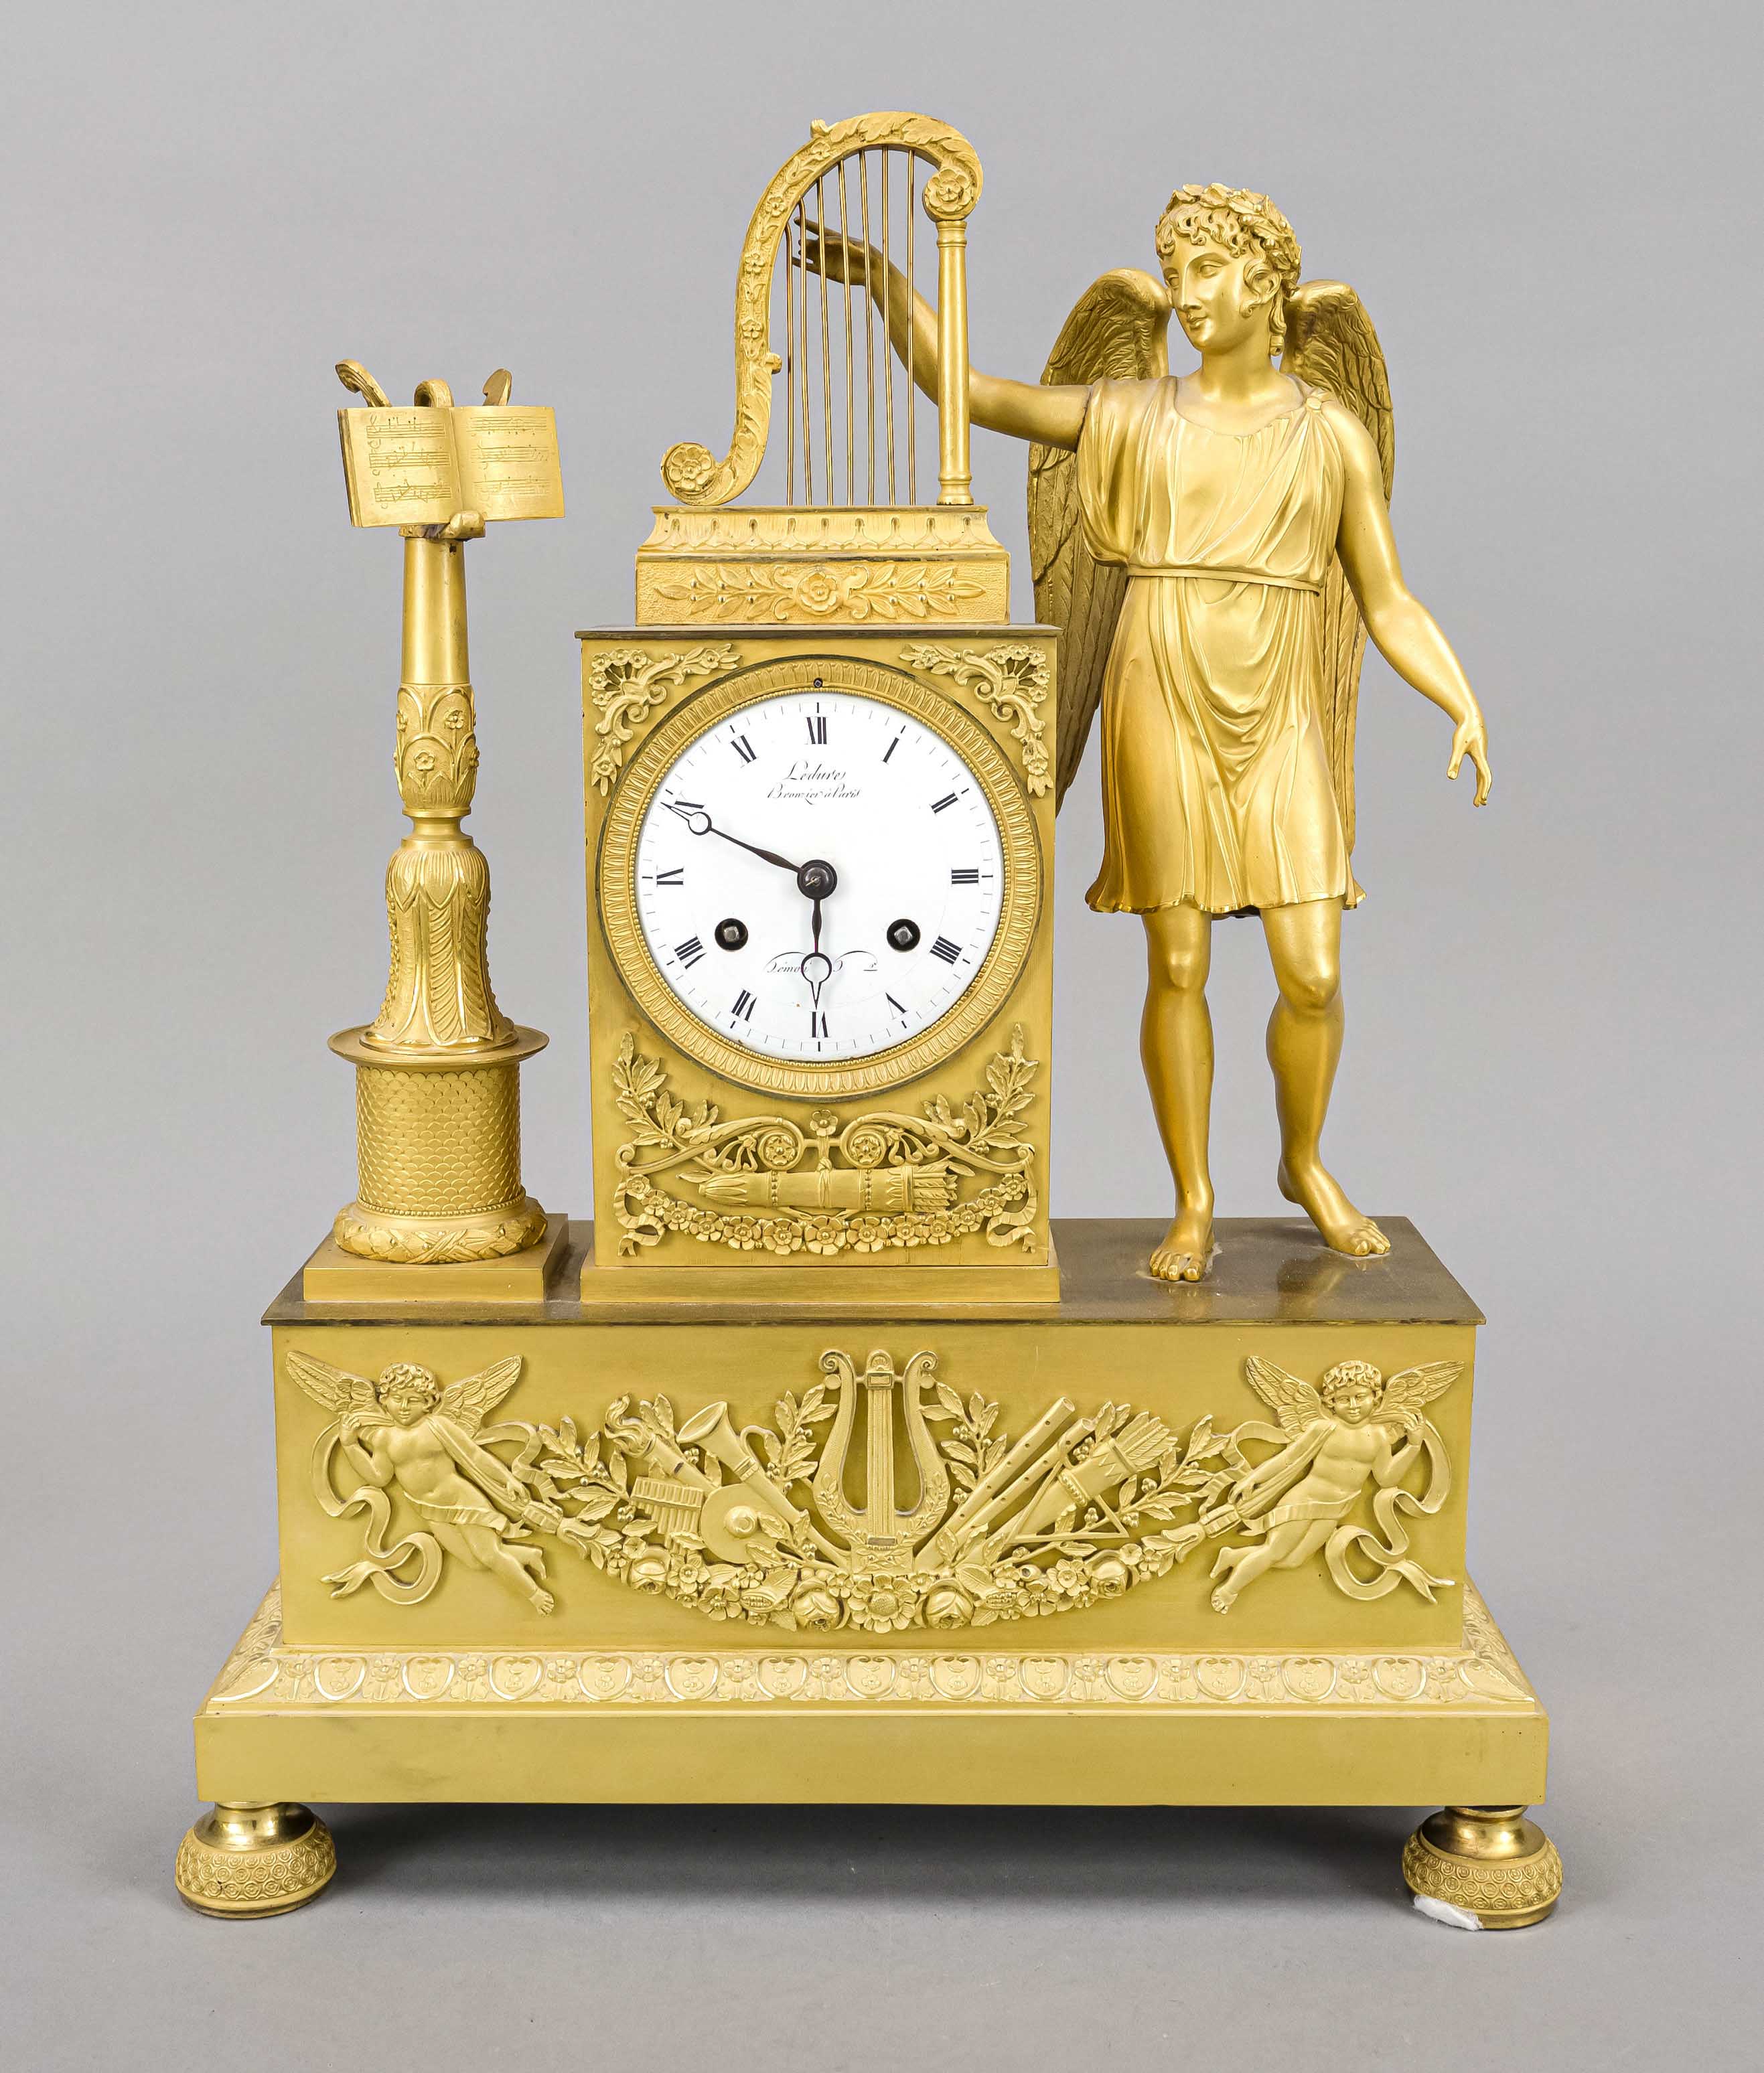 French Empire mantel clock, marked ''Pierre-Victor Ledure & Claude Hémon Paris'', fire-gilt